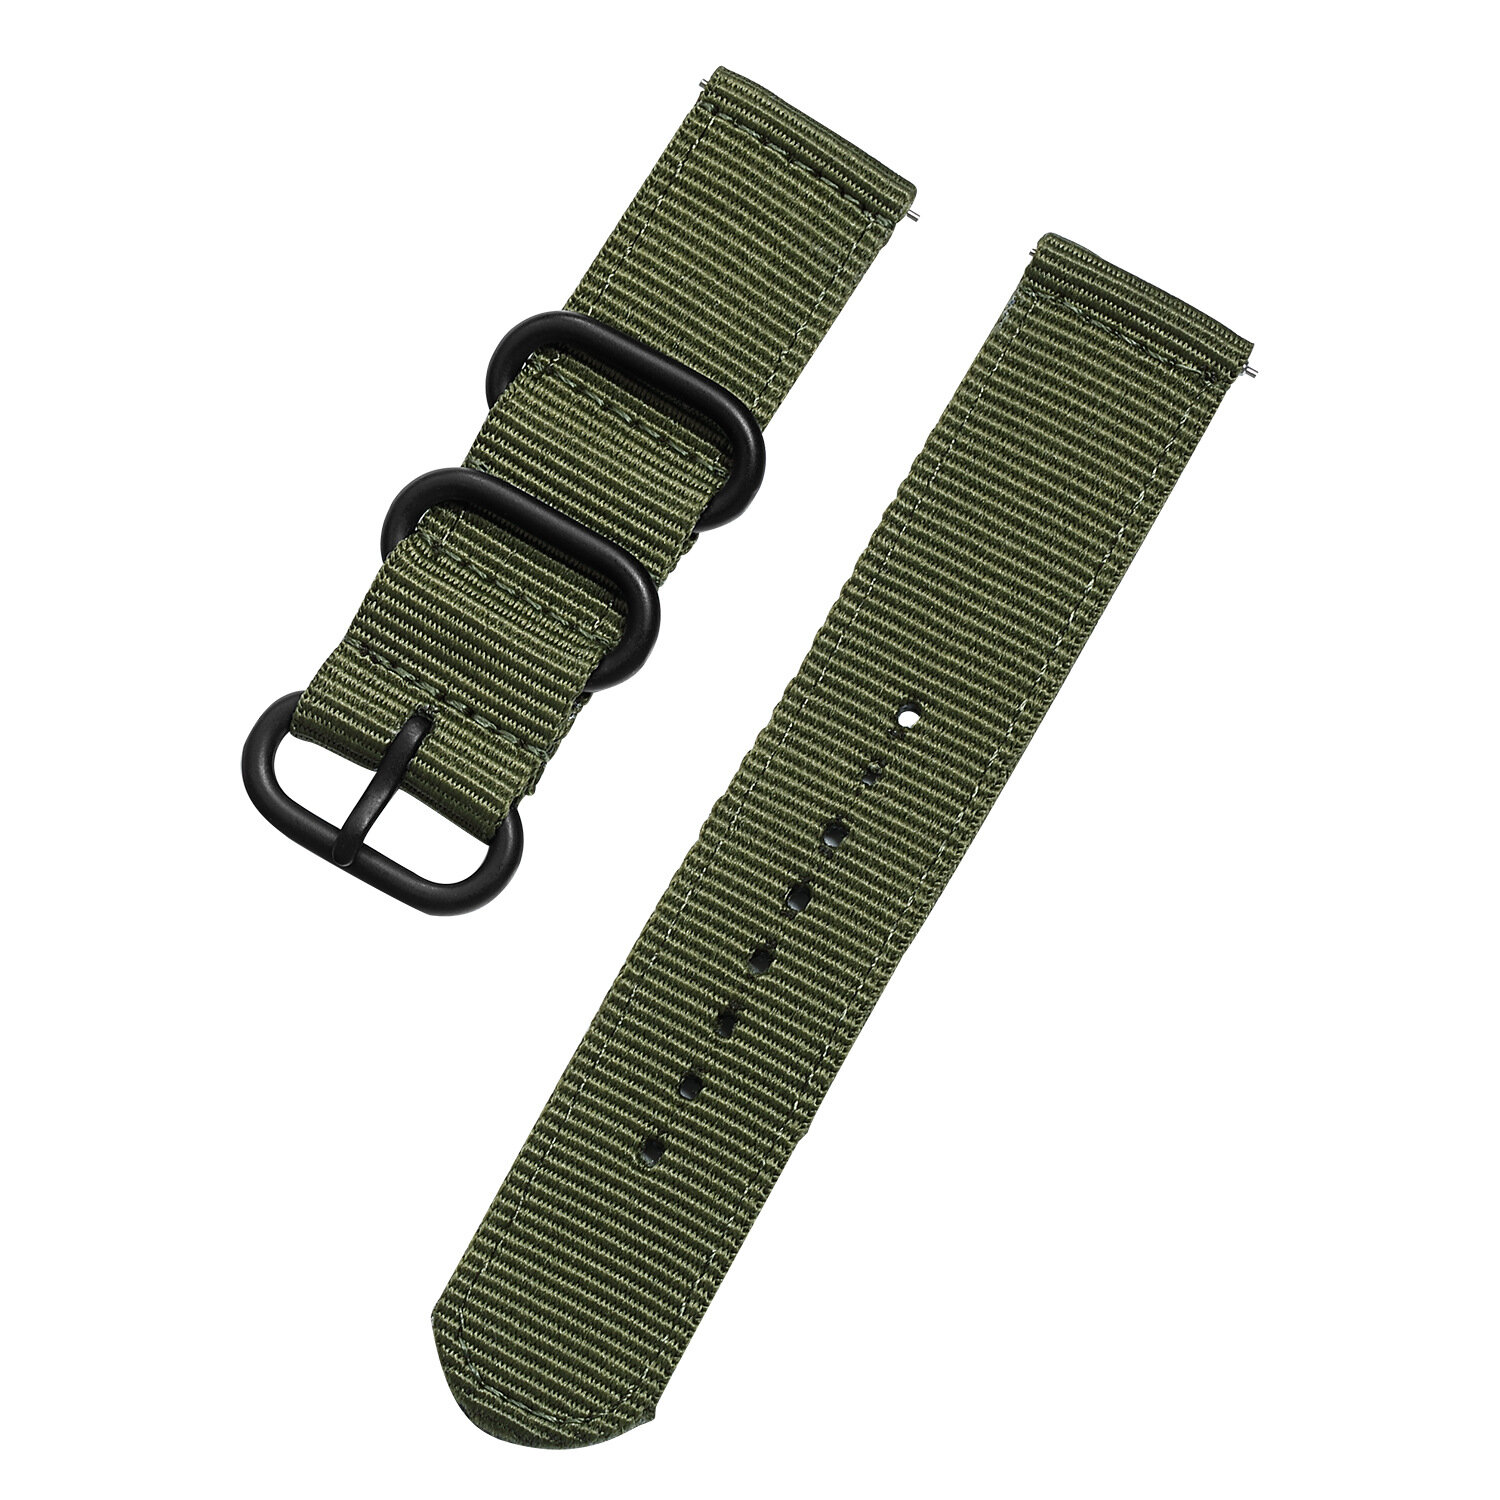 Bakeey 20 mm canvas Nylon Horlogebandriem Zwarte gesp Militaire stijl voor BW-HL1 / Samsung S3 Smart